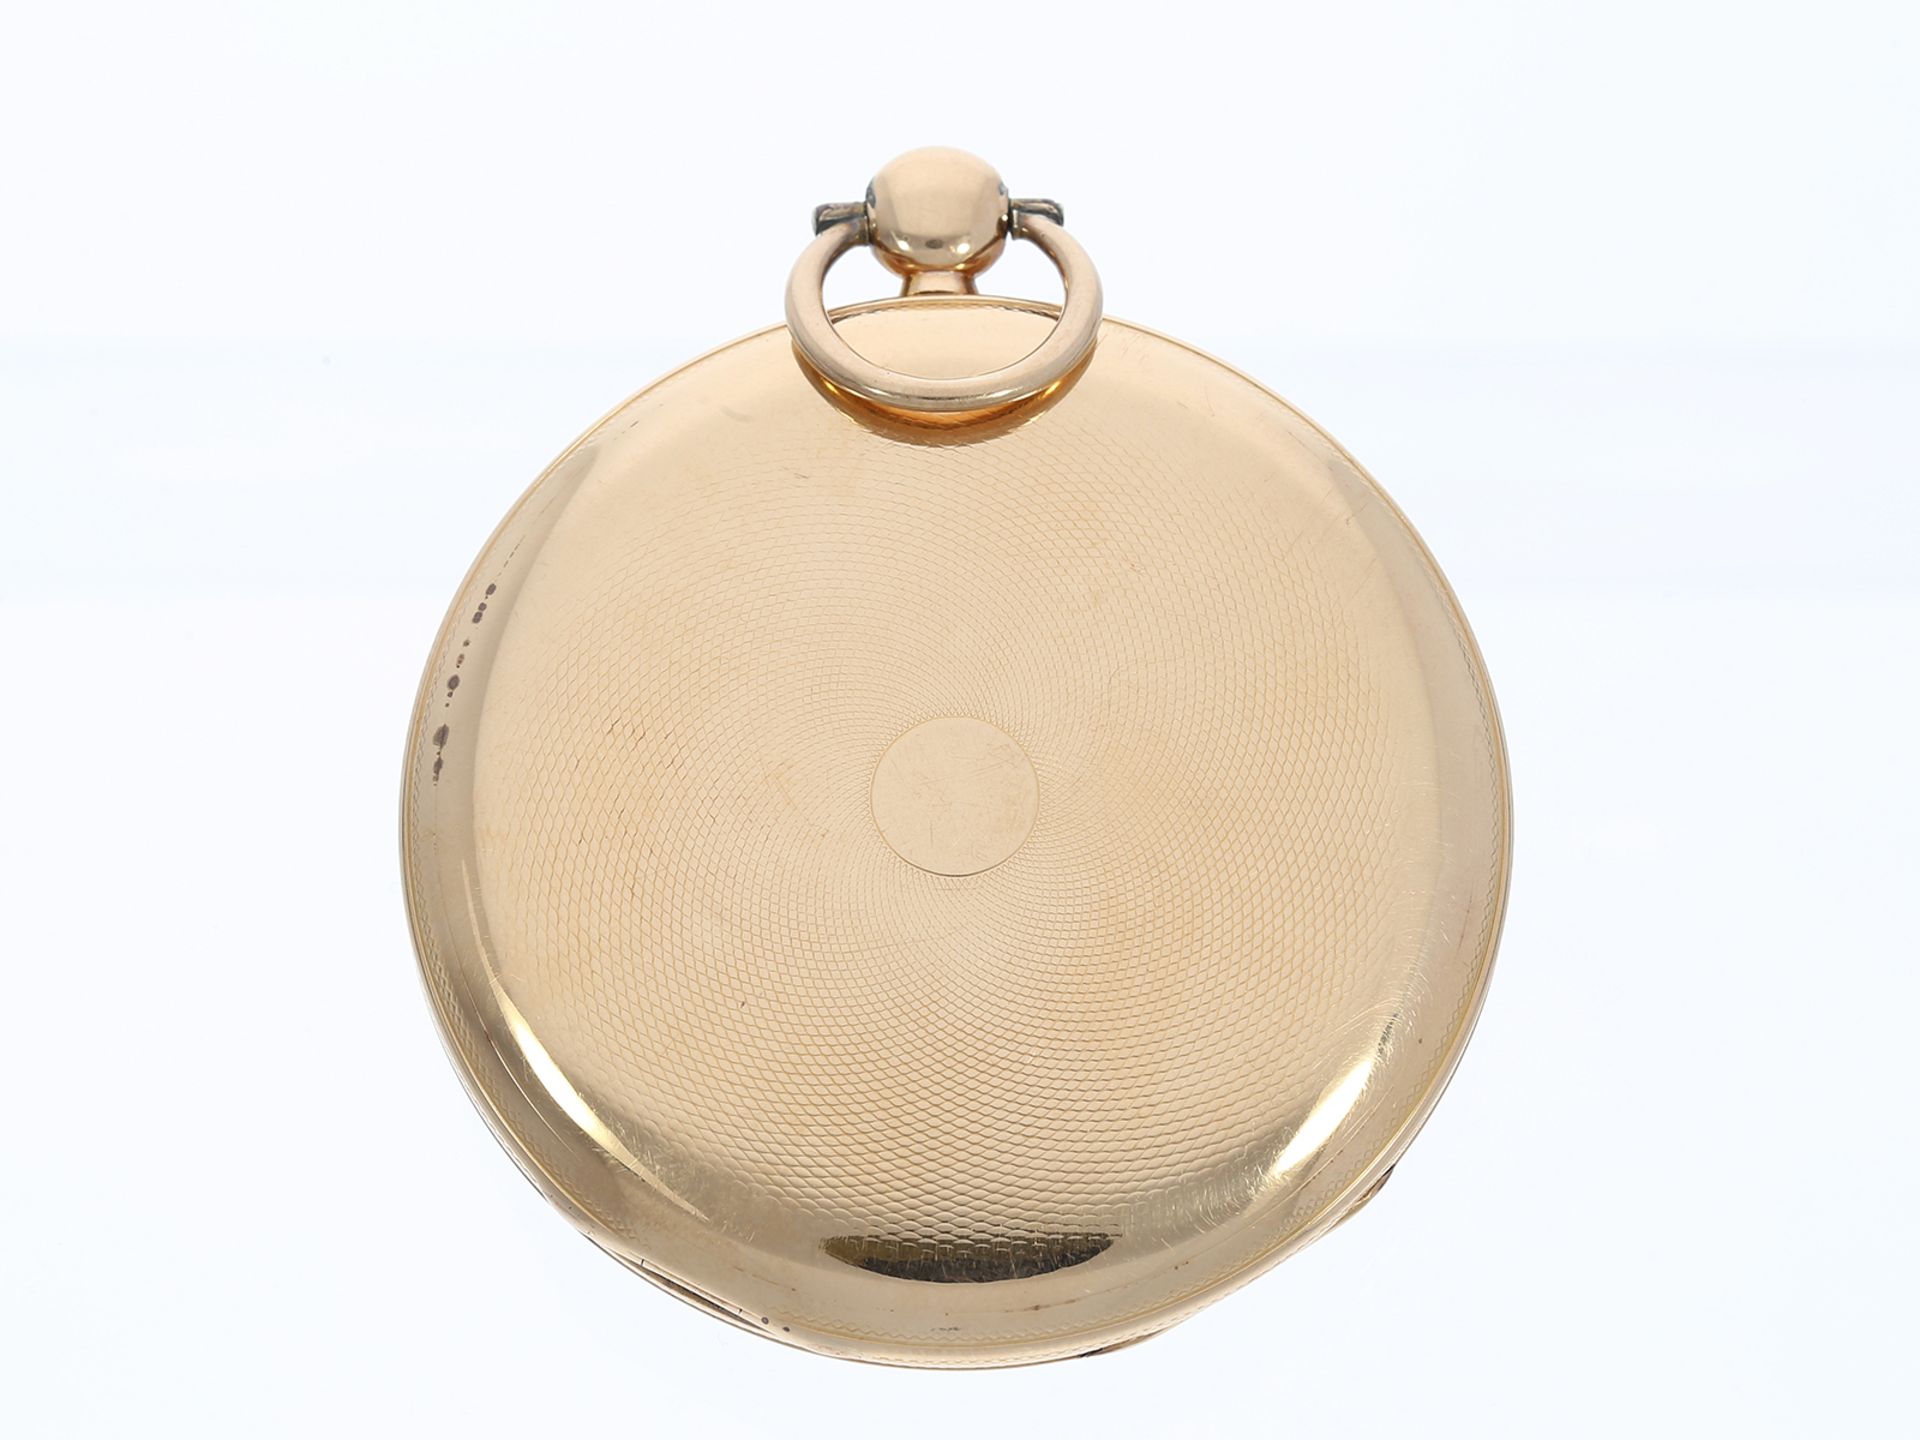 Taschenuhr: große, flache Zylinderuhr, Breguet-Typ Lepine, um 1820 - Bild 2 aus 4